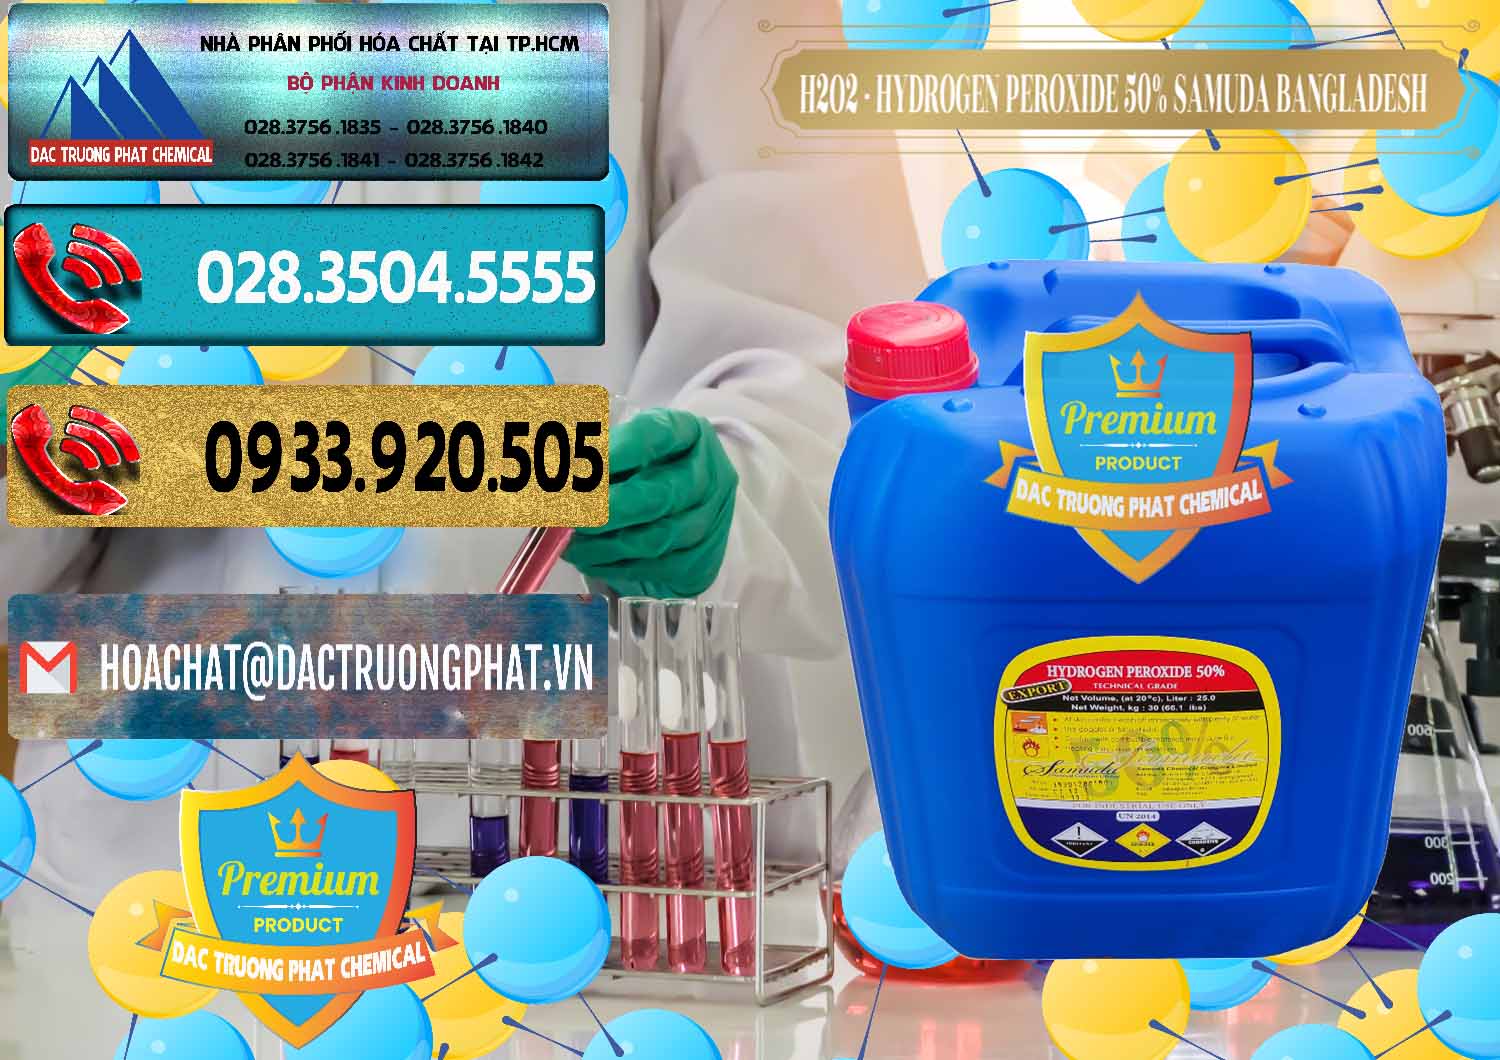 Chuyên cung cấp và bán H2O2 - Hydrogen Peroxide 50% Samuda Bangladesh - 0077 - Chuyên phân phối - cung cấp hóa chất tại TP.HCM - hoachatdetnhuom.com